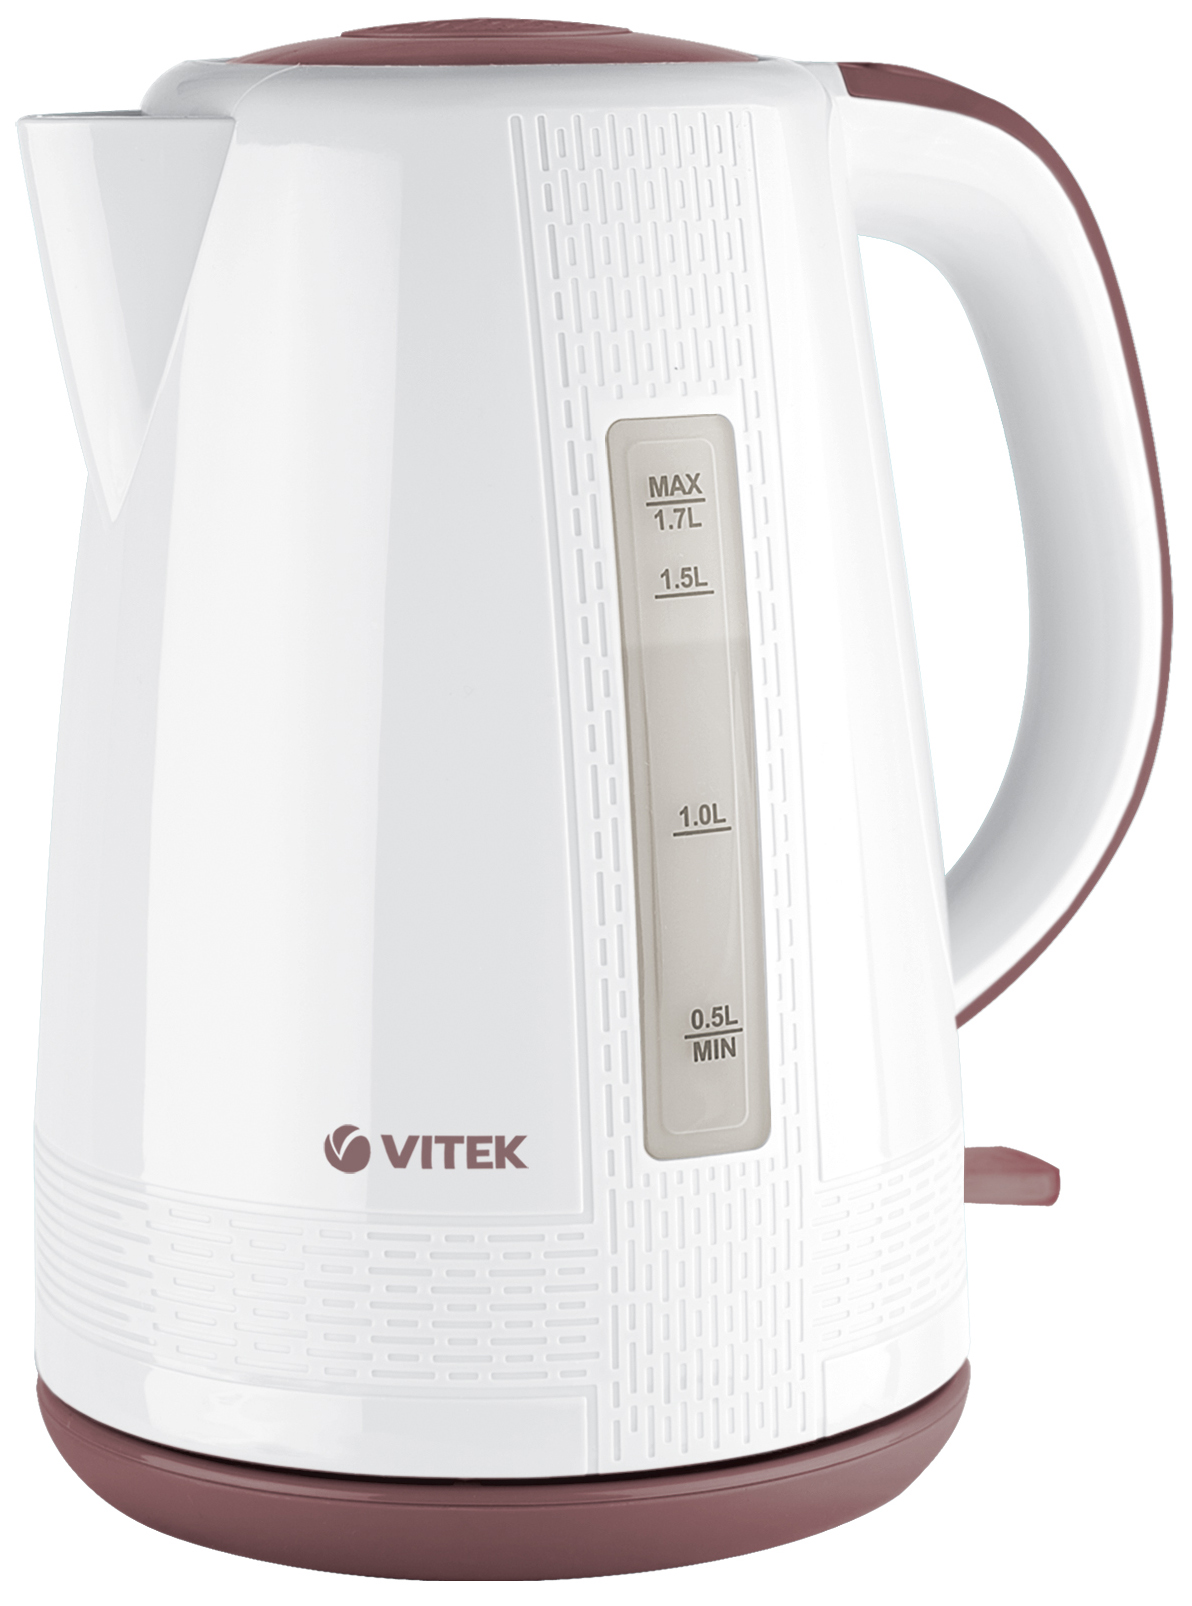 Чайник электрический VITEK VT-7055 1.7 л белый, коричневый фен starwind sht4417 1 600 вт коричневый белый